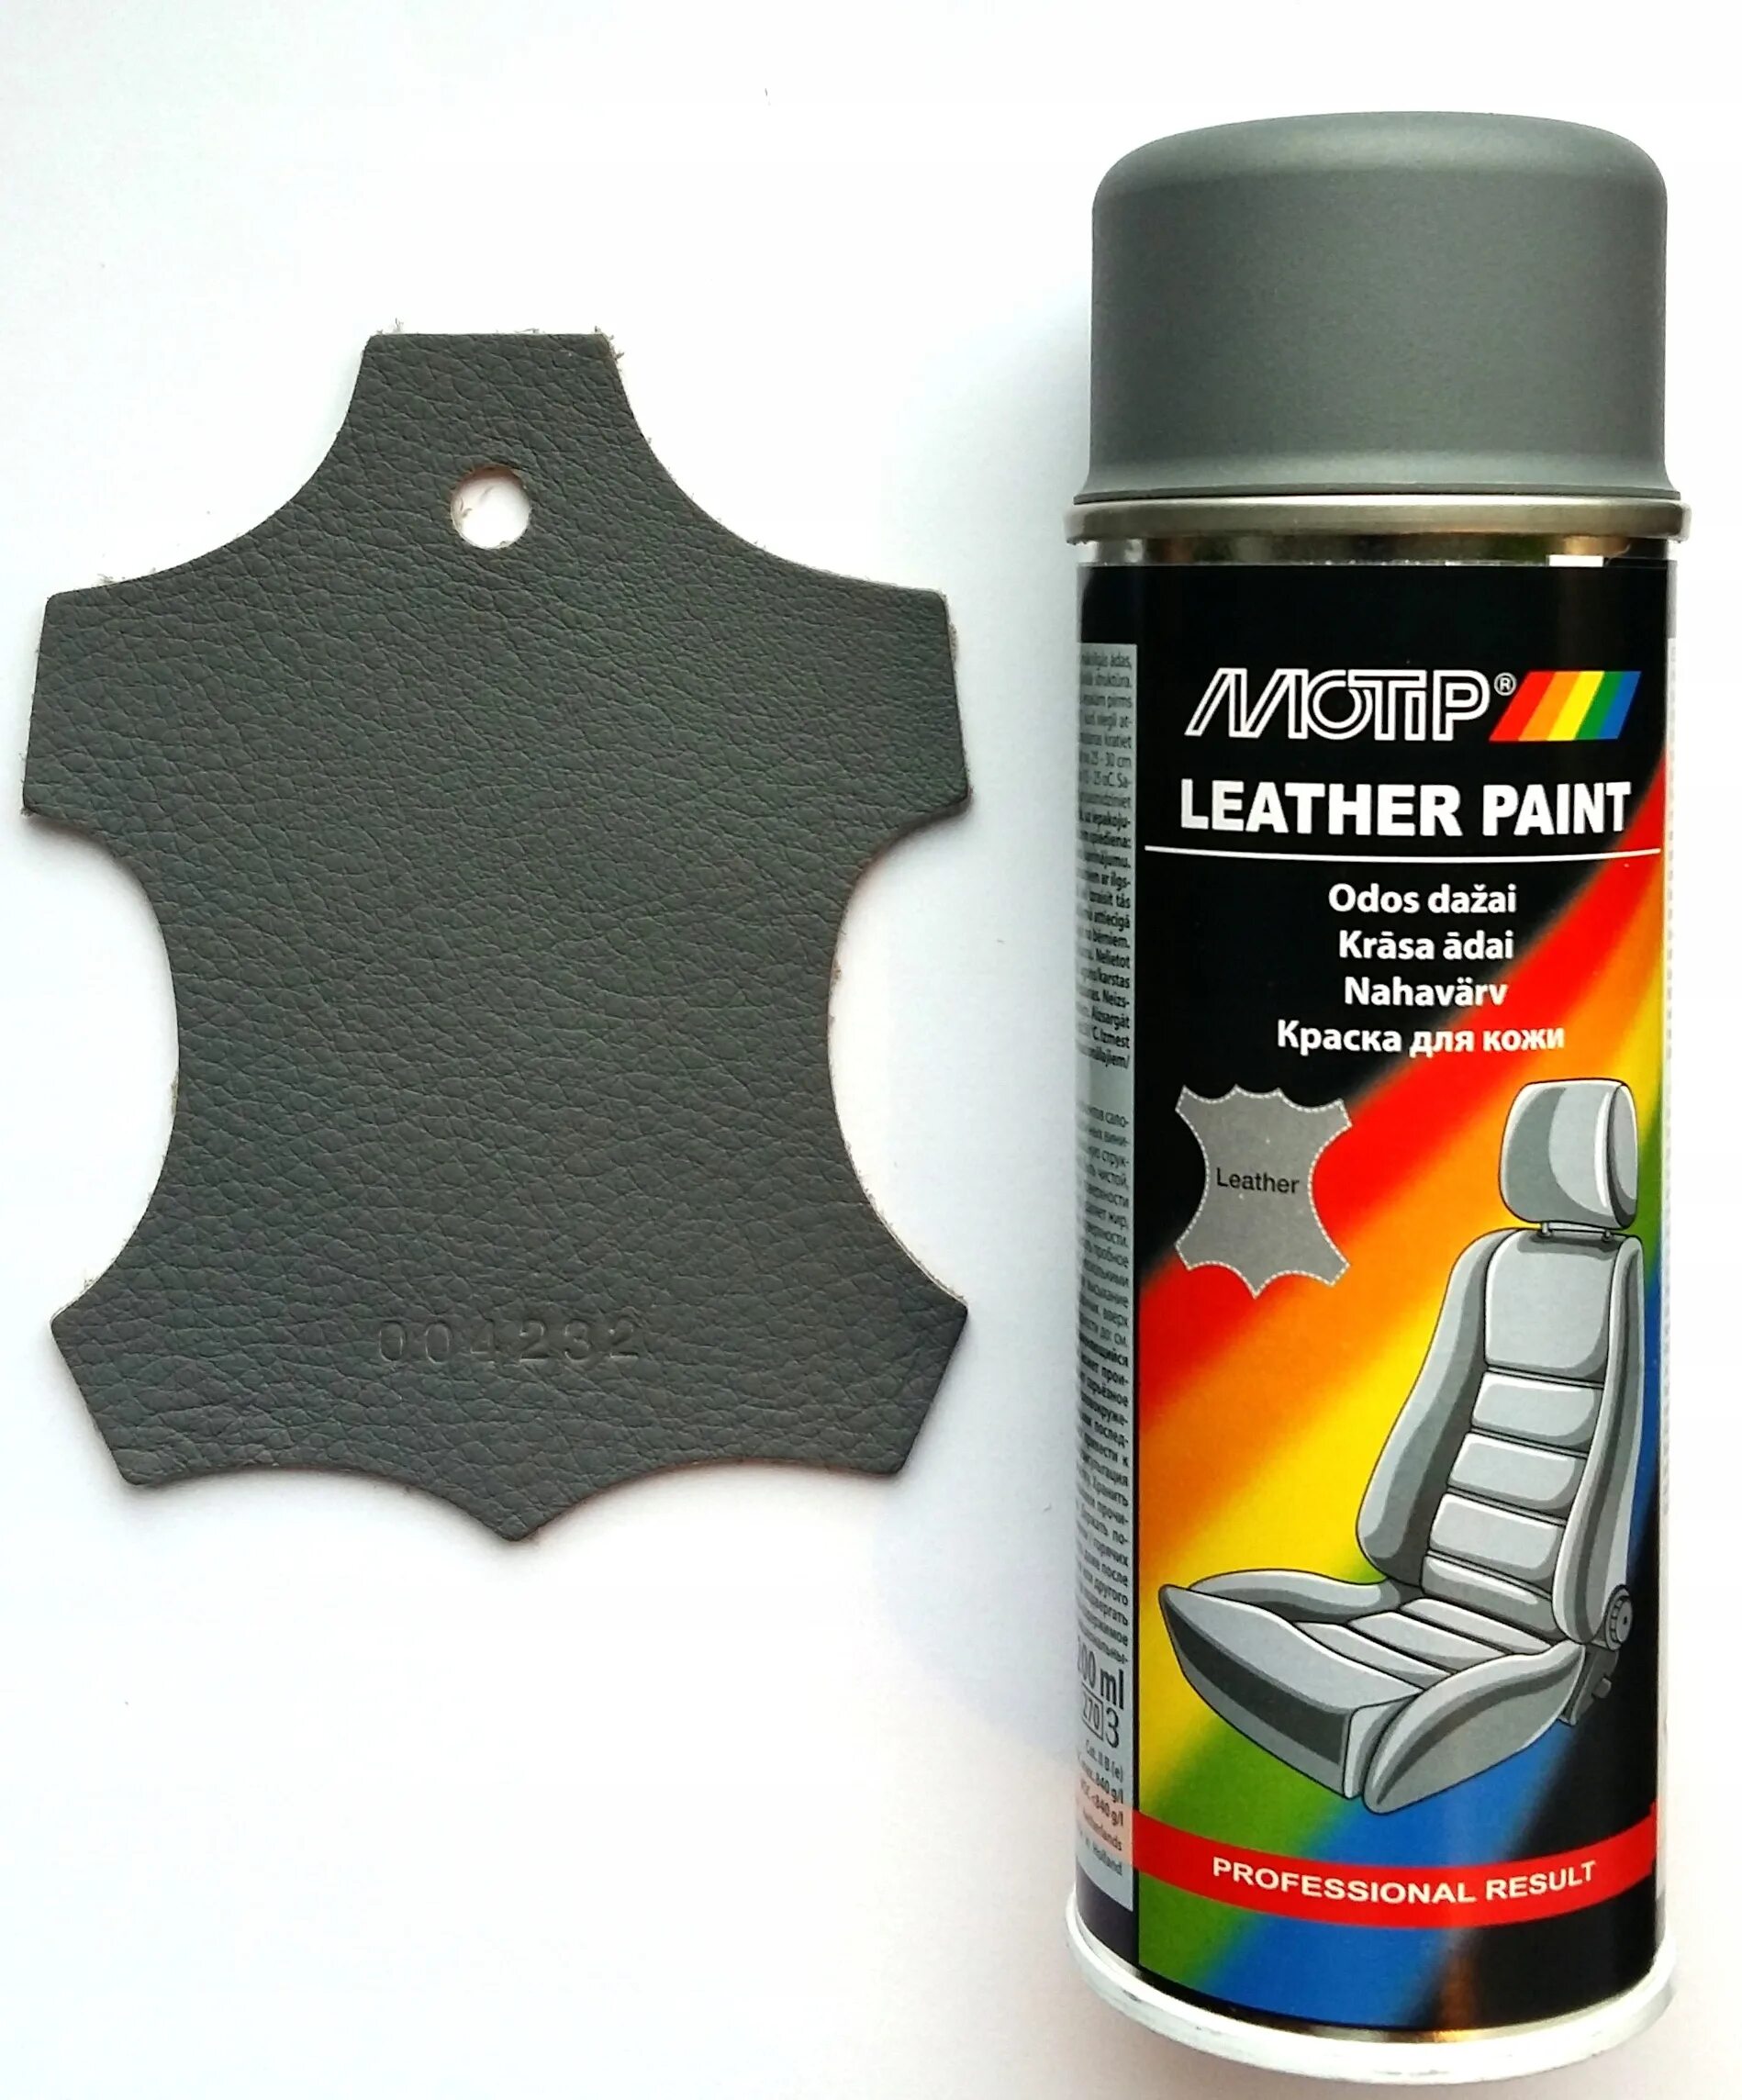 Краска темно серая купить. 04232bs MOTIP. MOTIP краска для кожи серая. MOTIP аэрозольная автоэмаль Leather Paint. MOTIP 04232bs краска автомобильная.